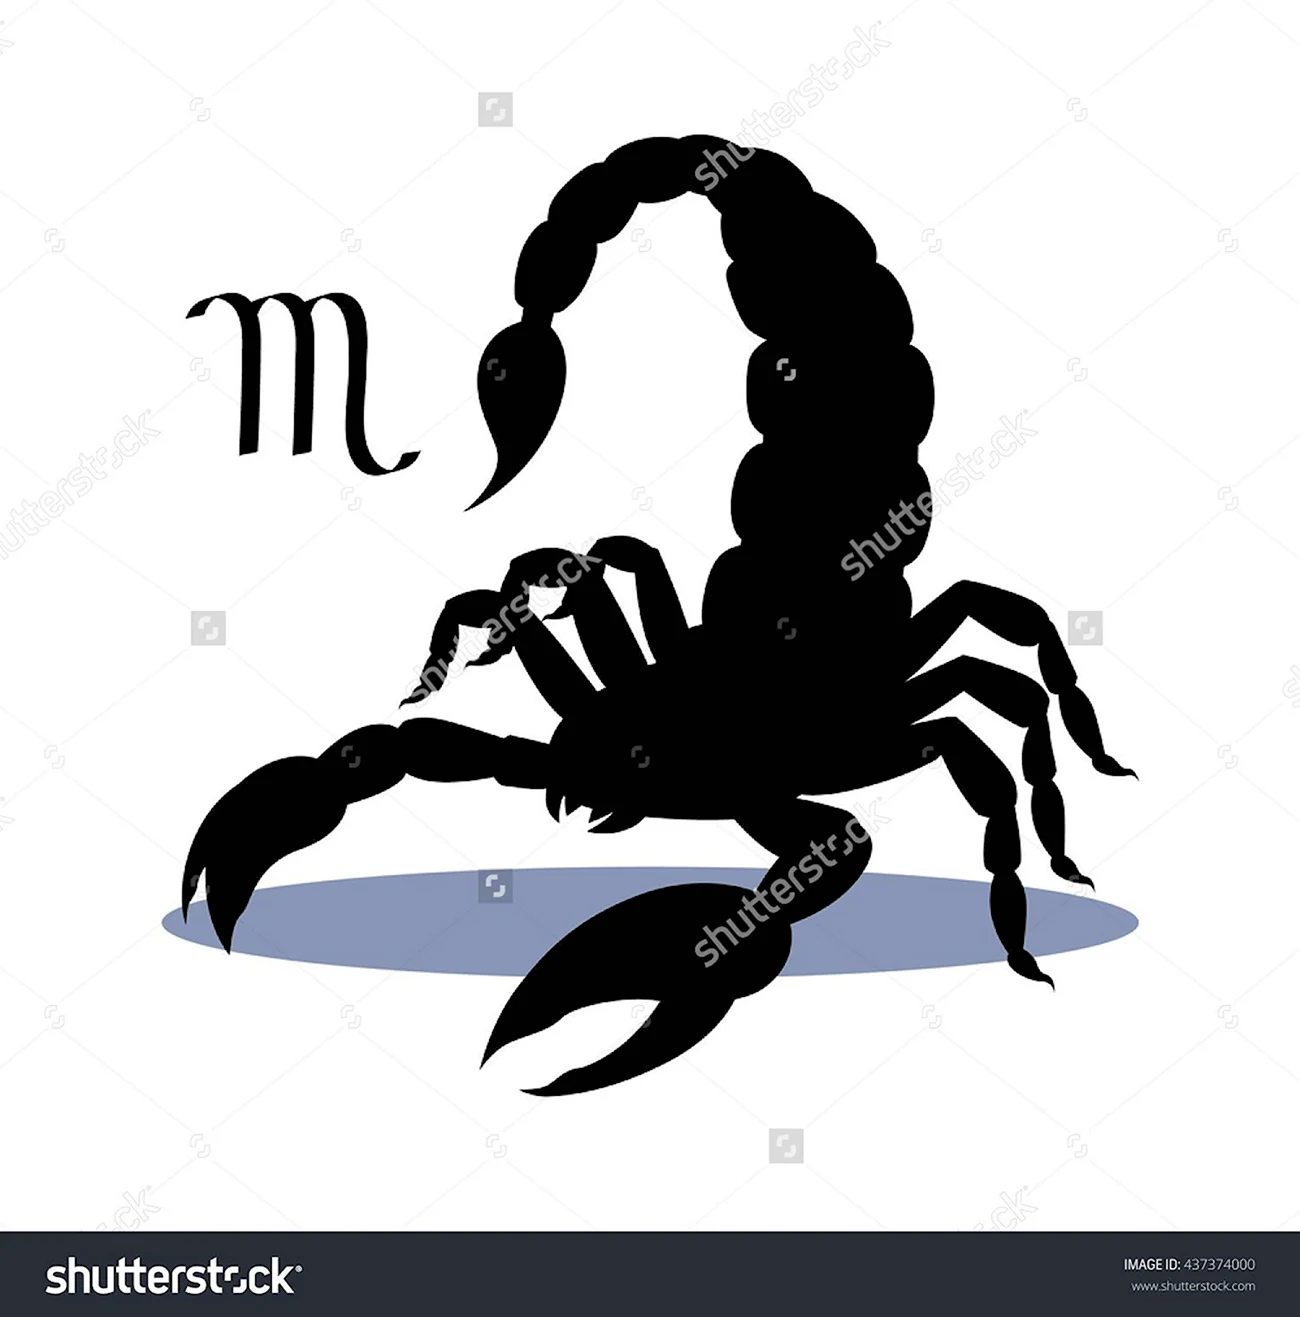 Скорпион силуэт. Красивая картинка